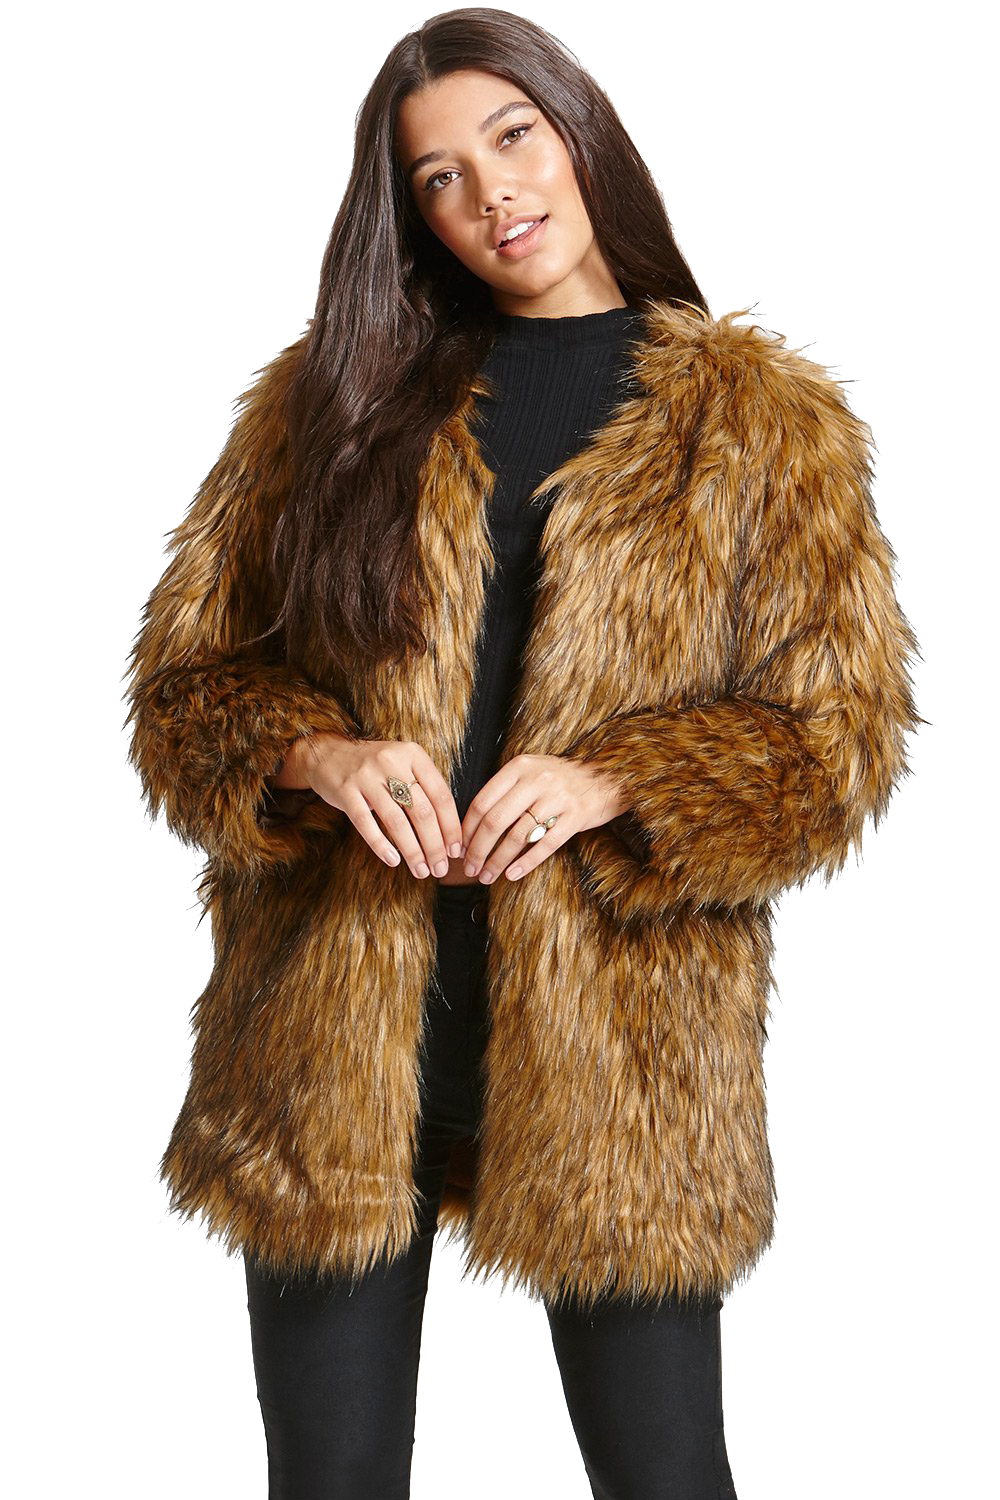 Faux Fur Coat PNG Image